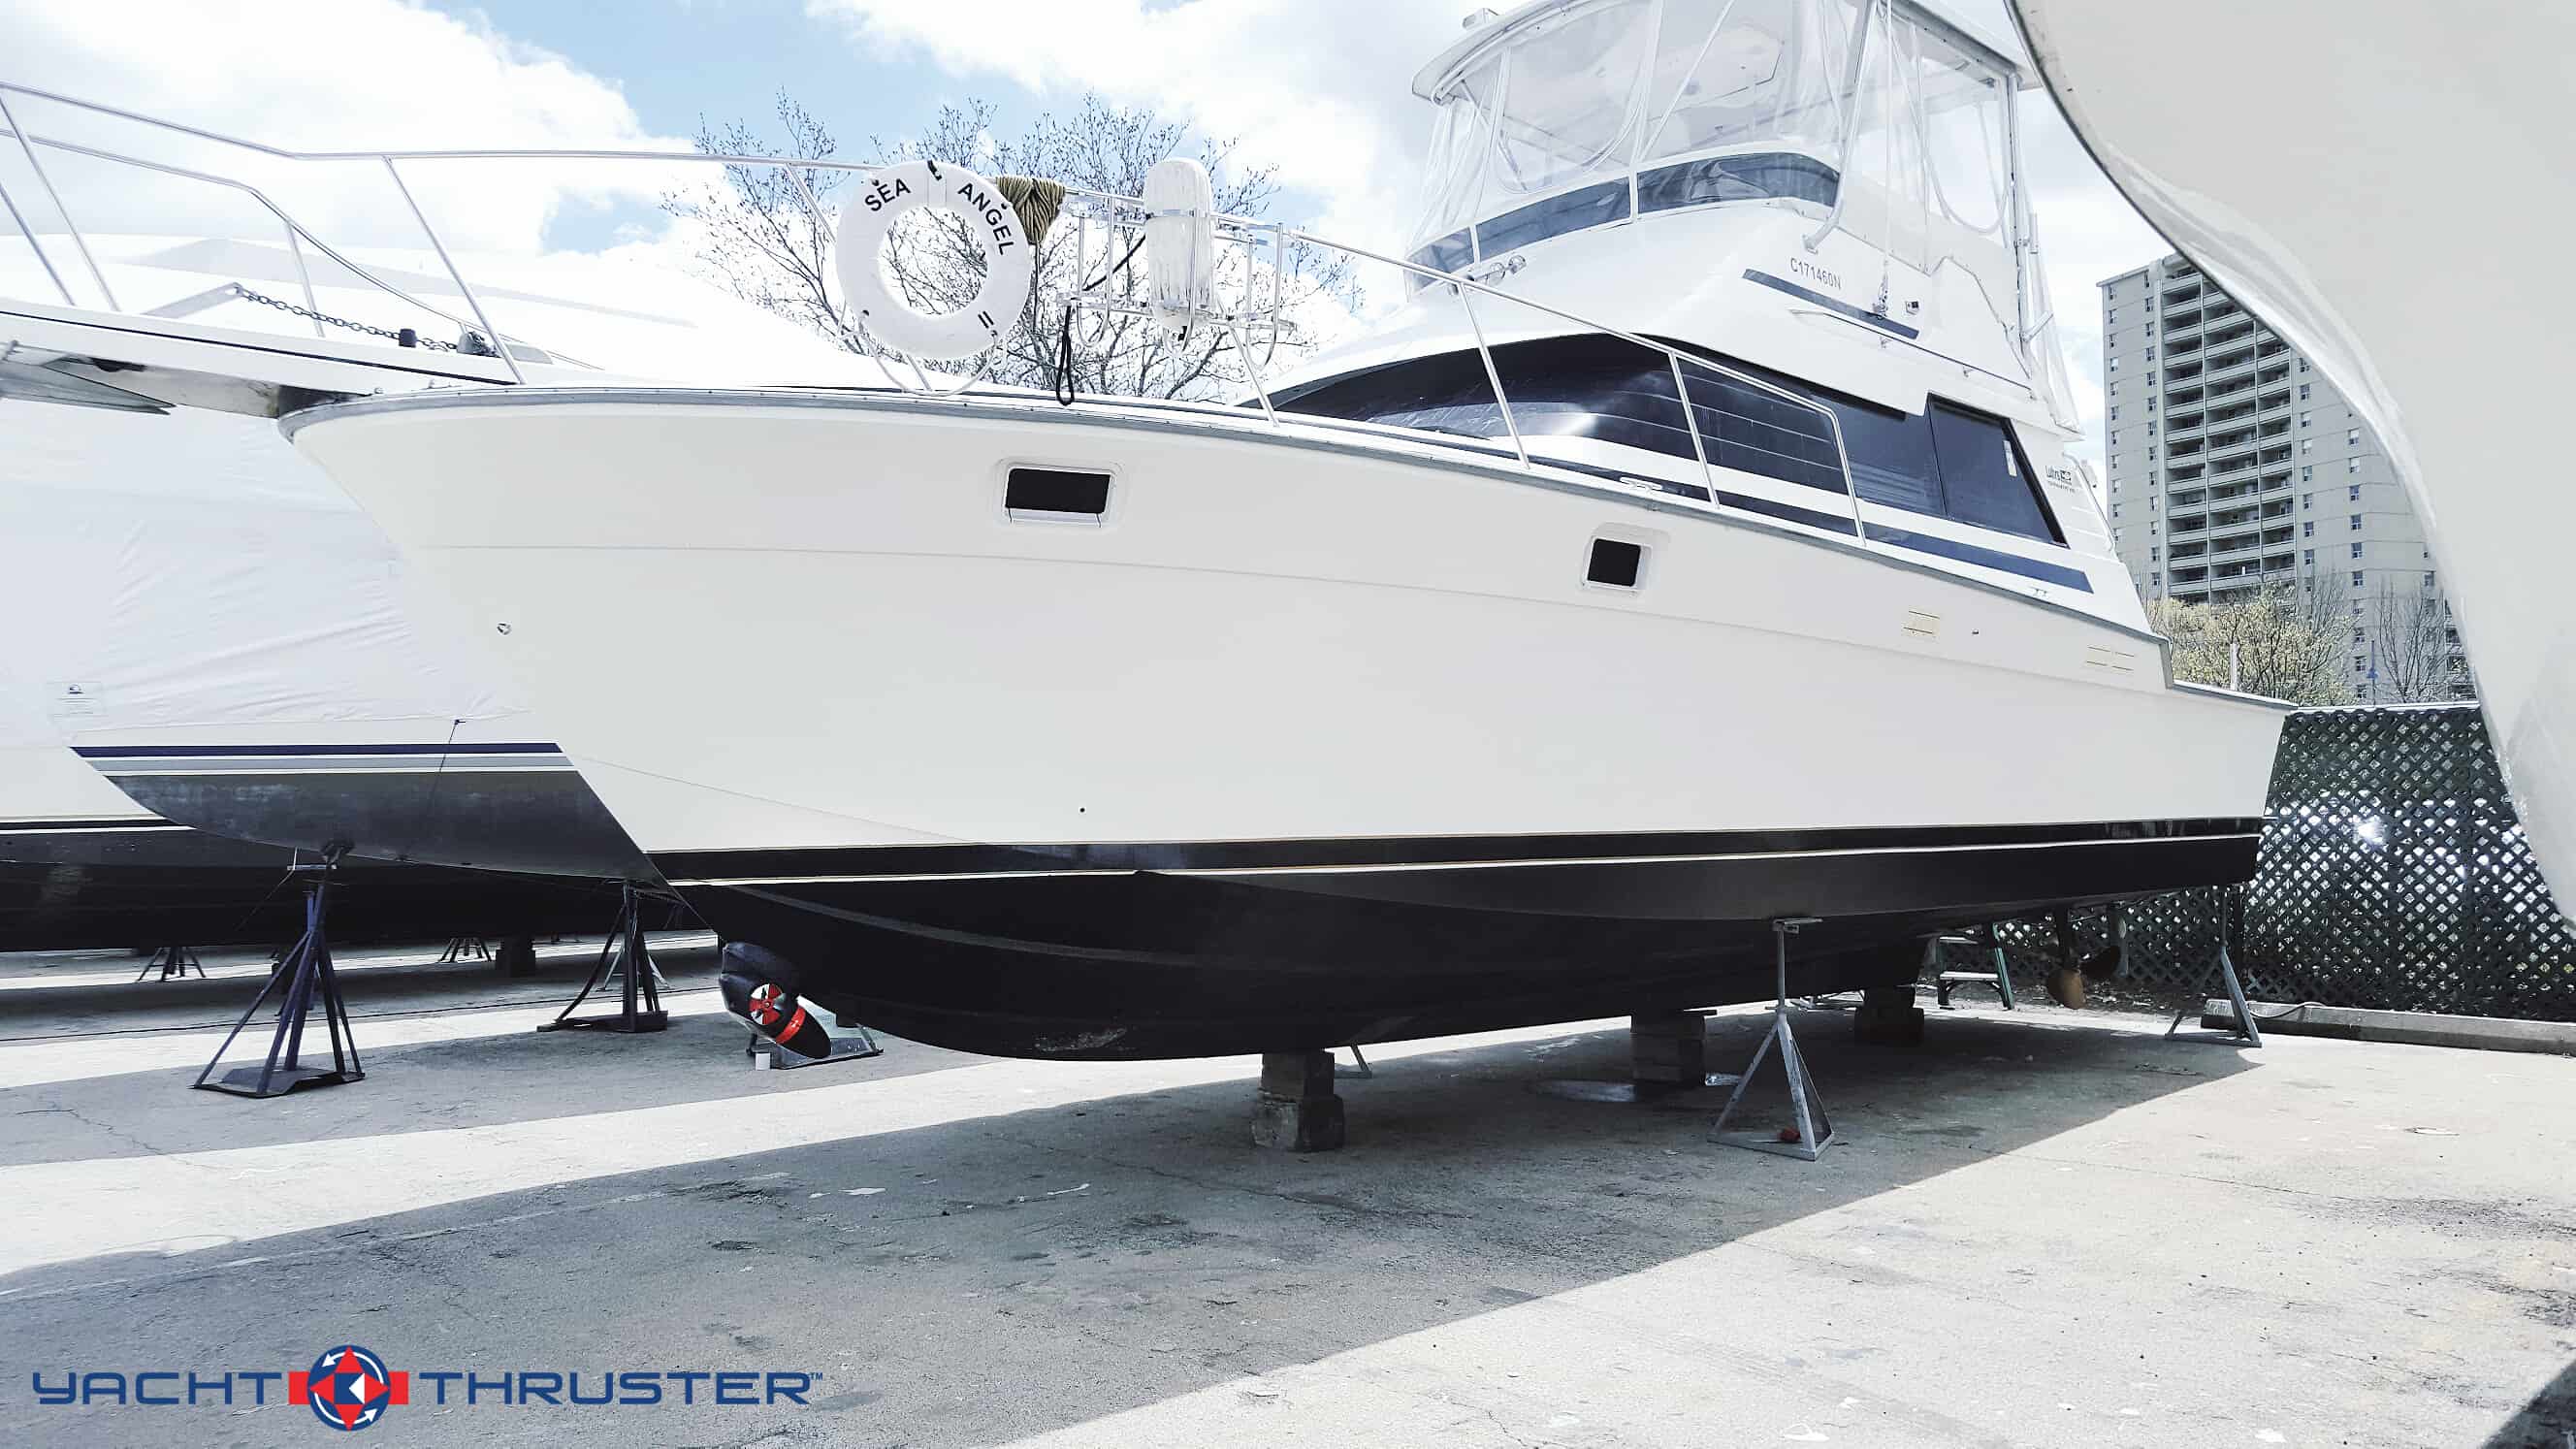 yacht thruster 300s price